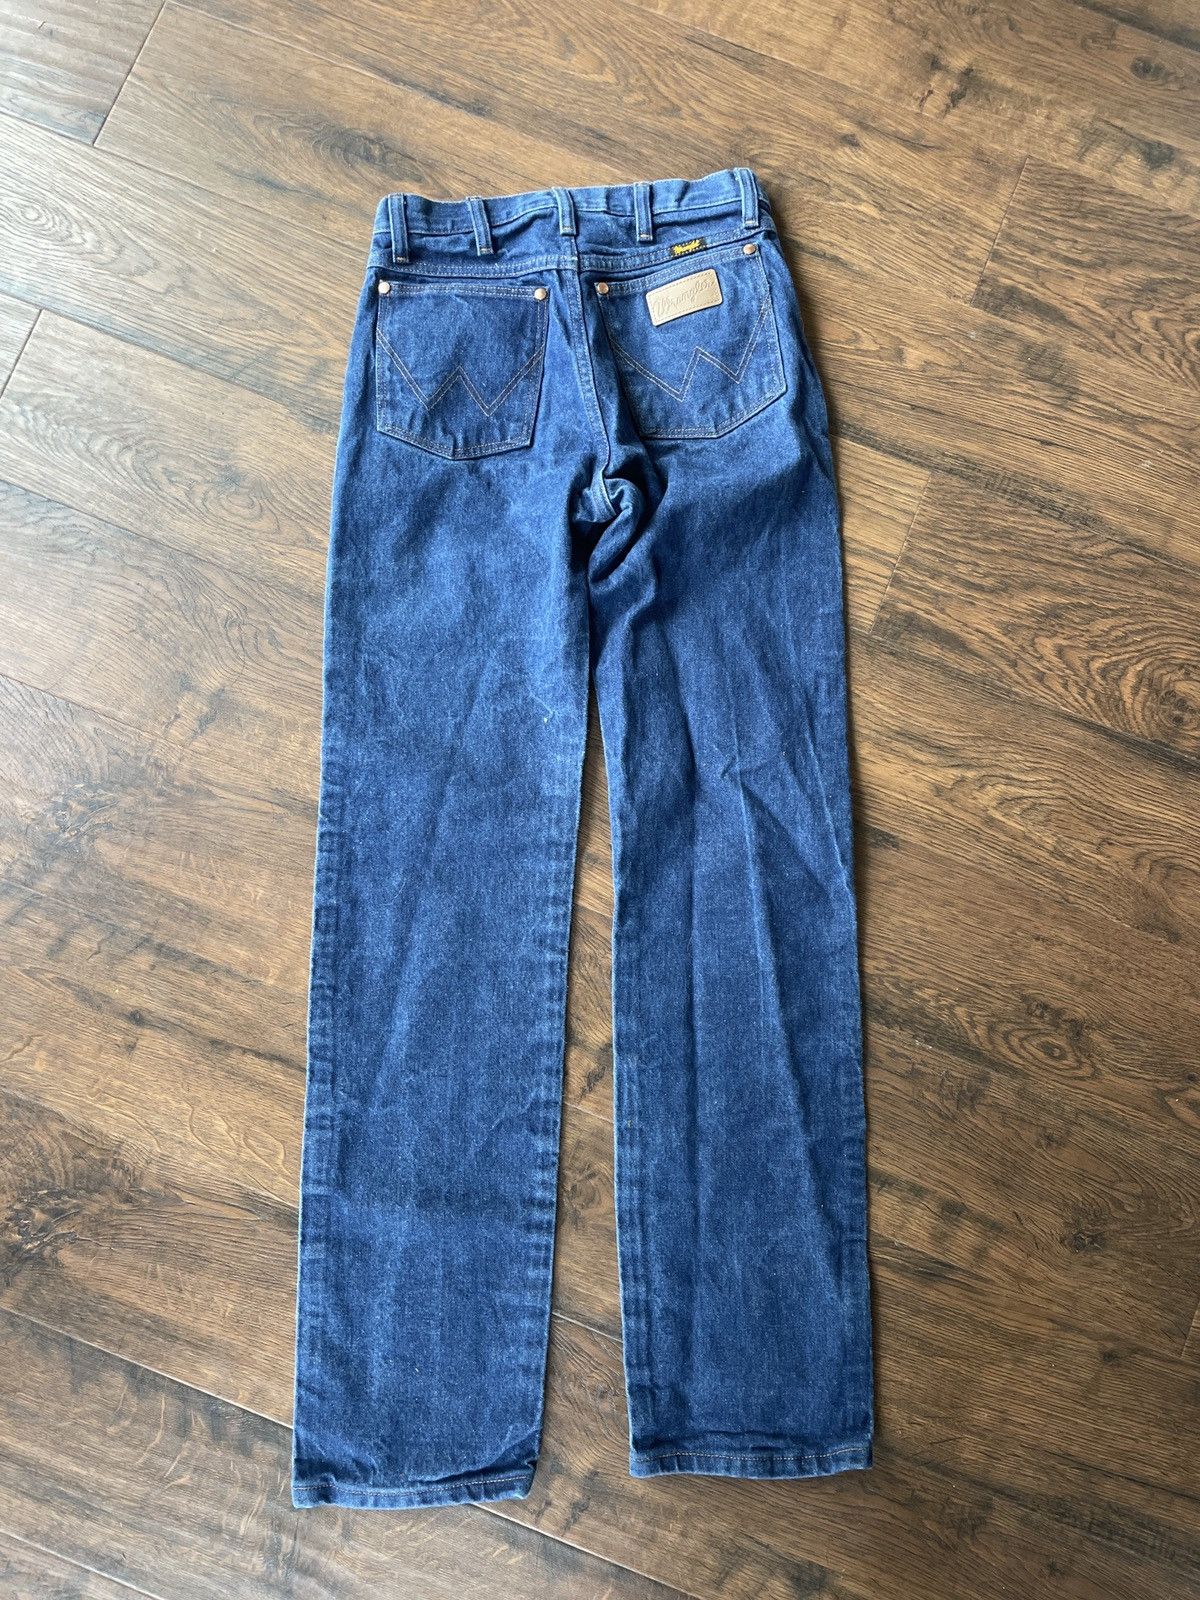 Wrangler wrangler jeans Size US 29 - 6 Preview